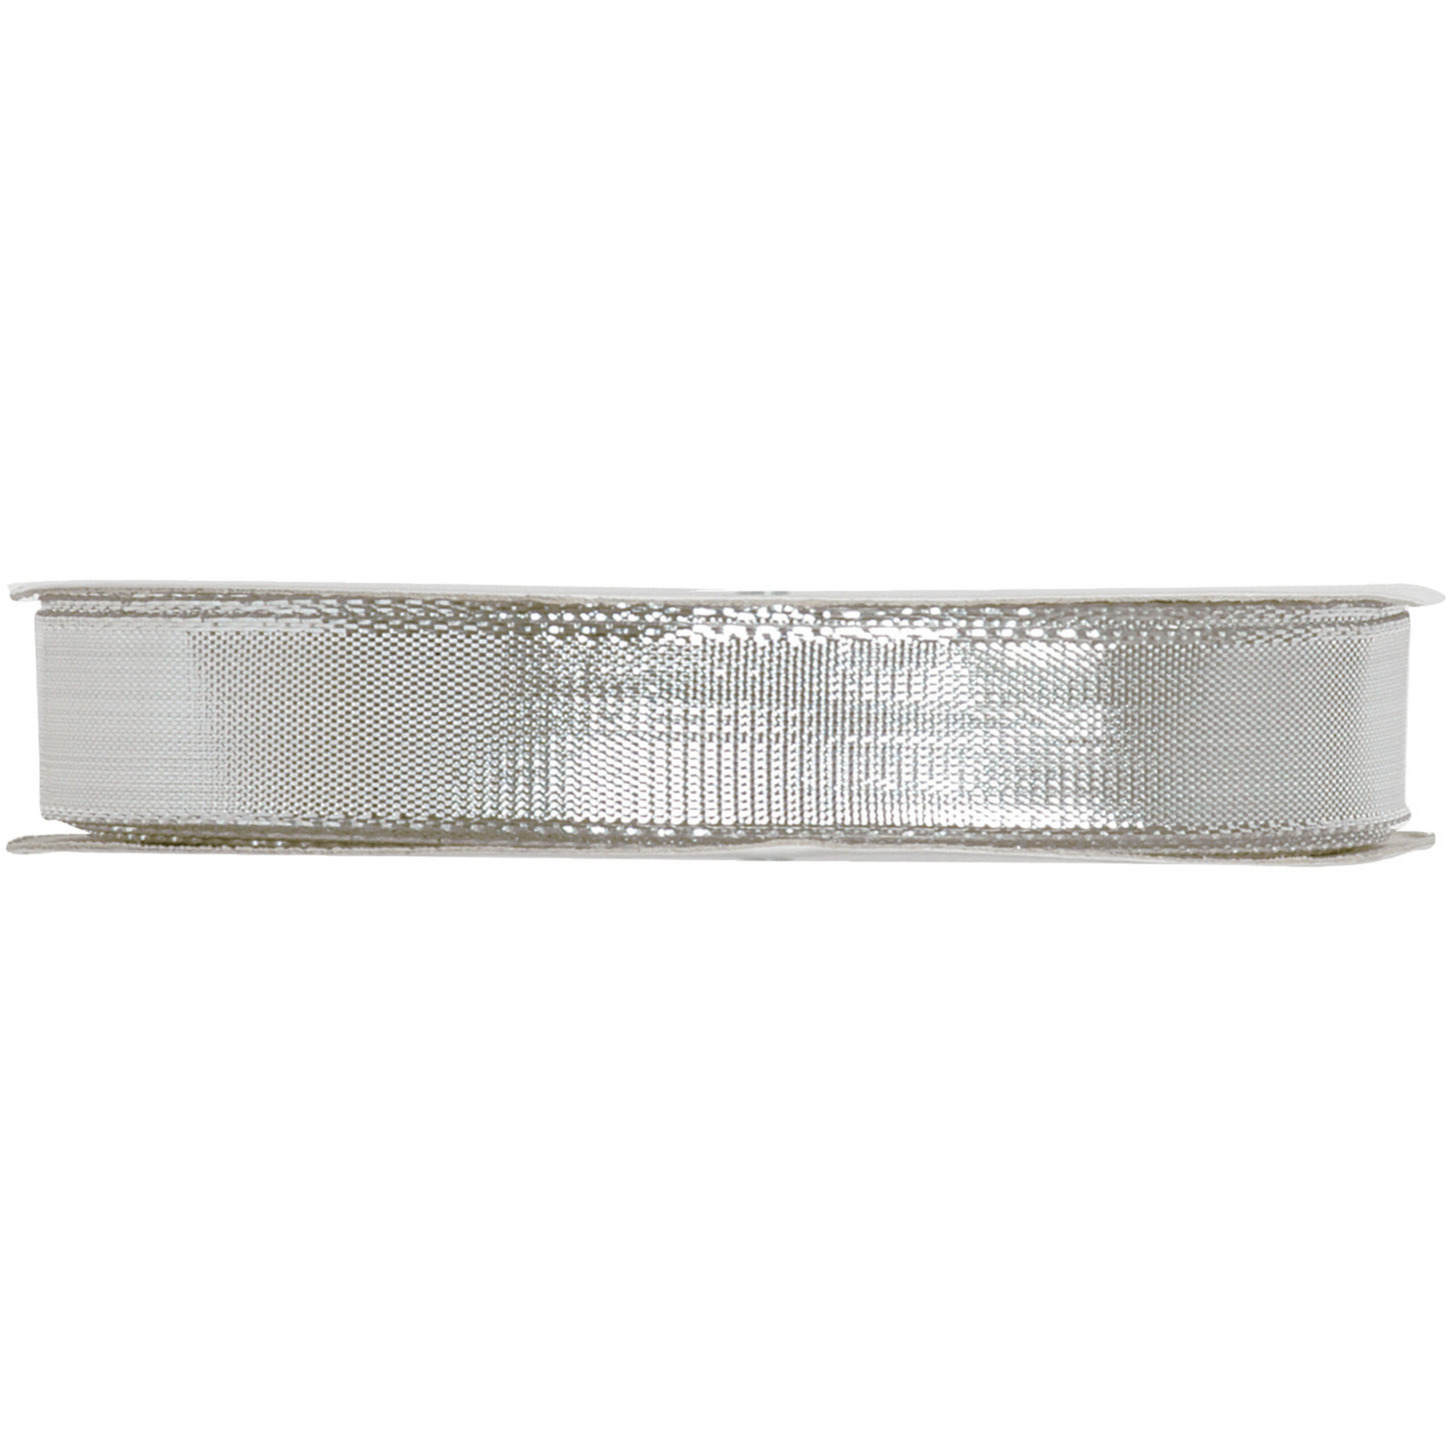 1x Hobby/decoratie metallic zilveren sierlinten met glitters 9 mm x 25 meter